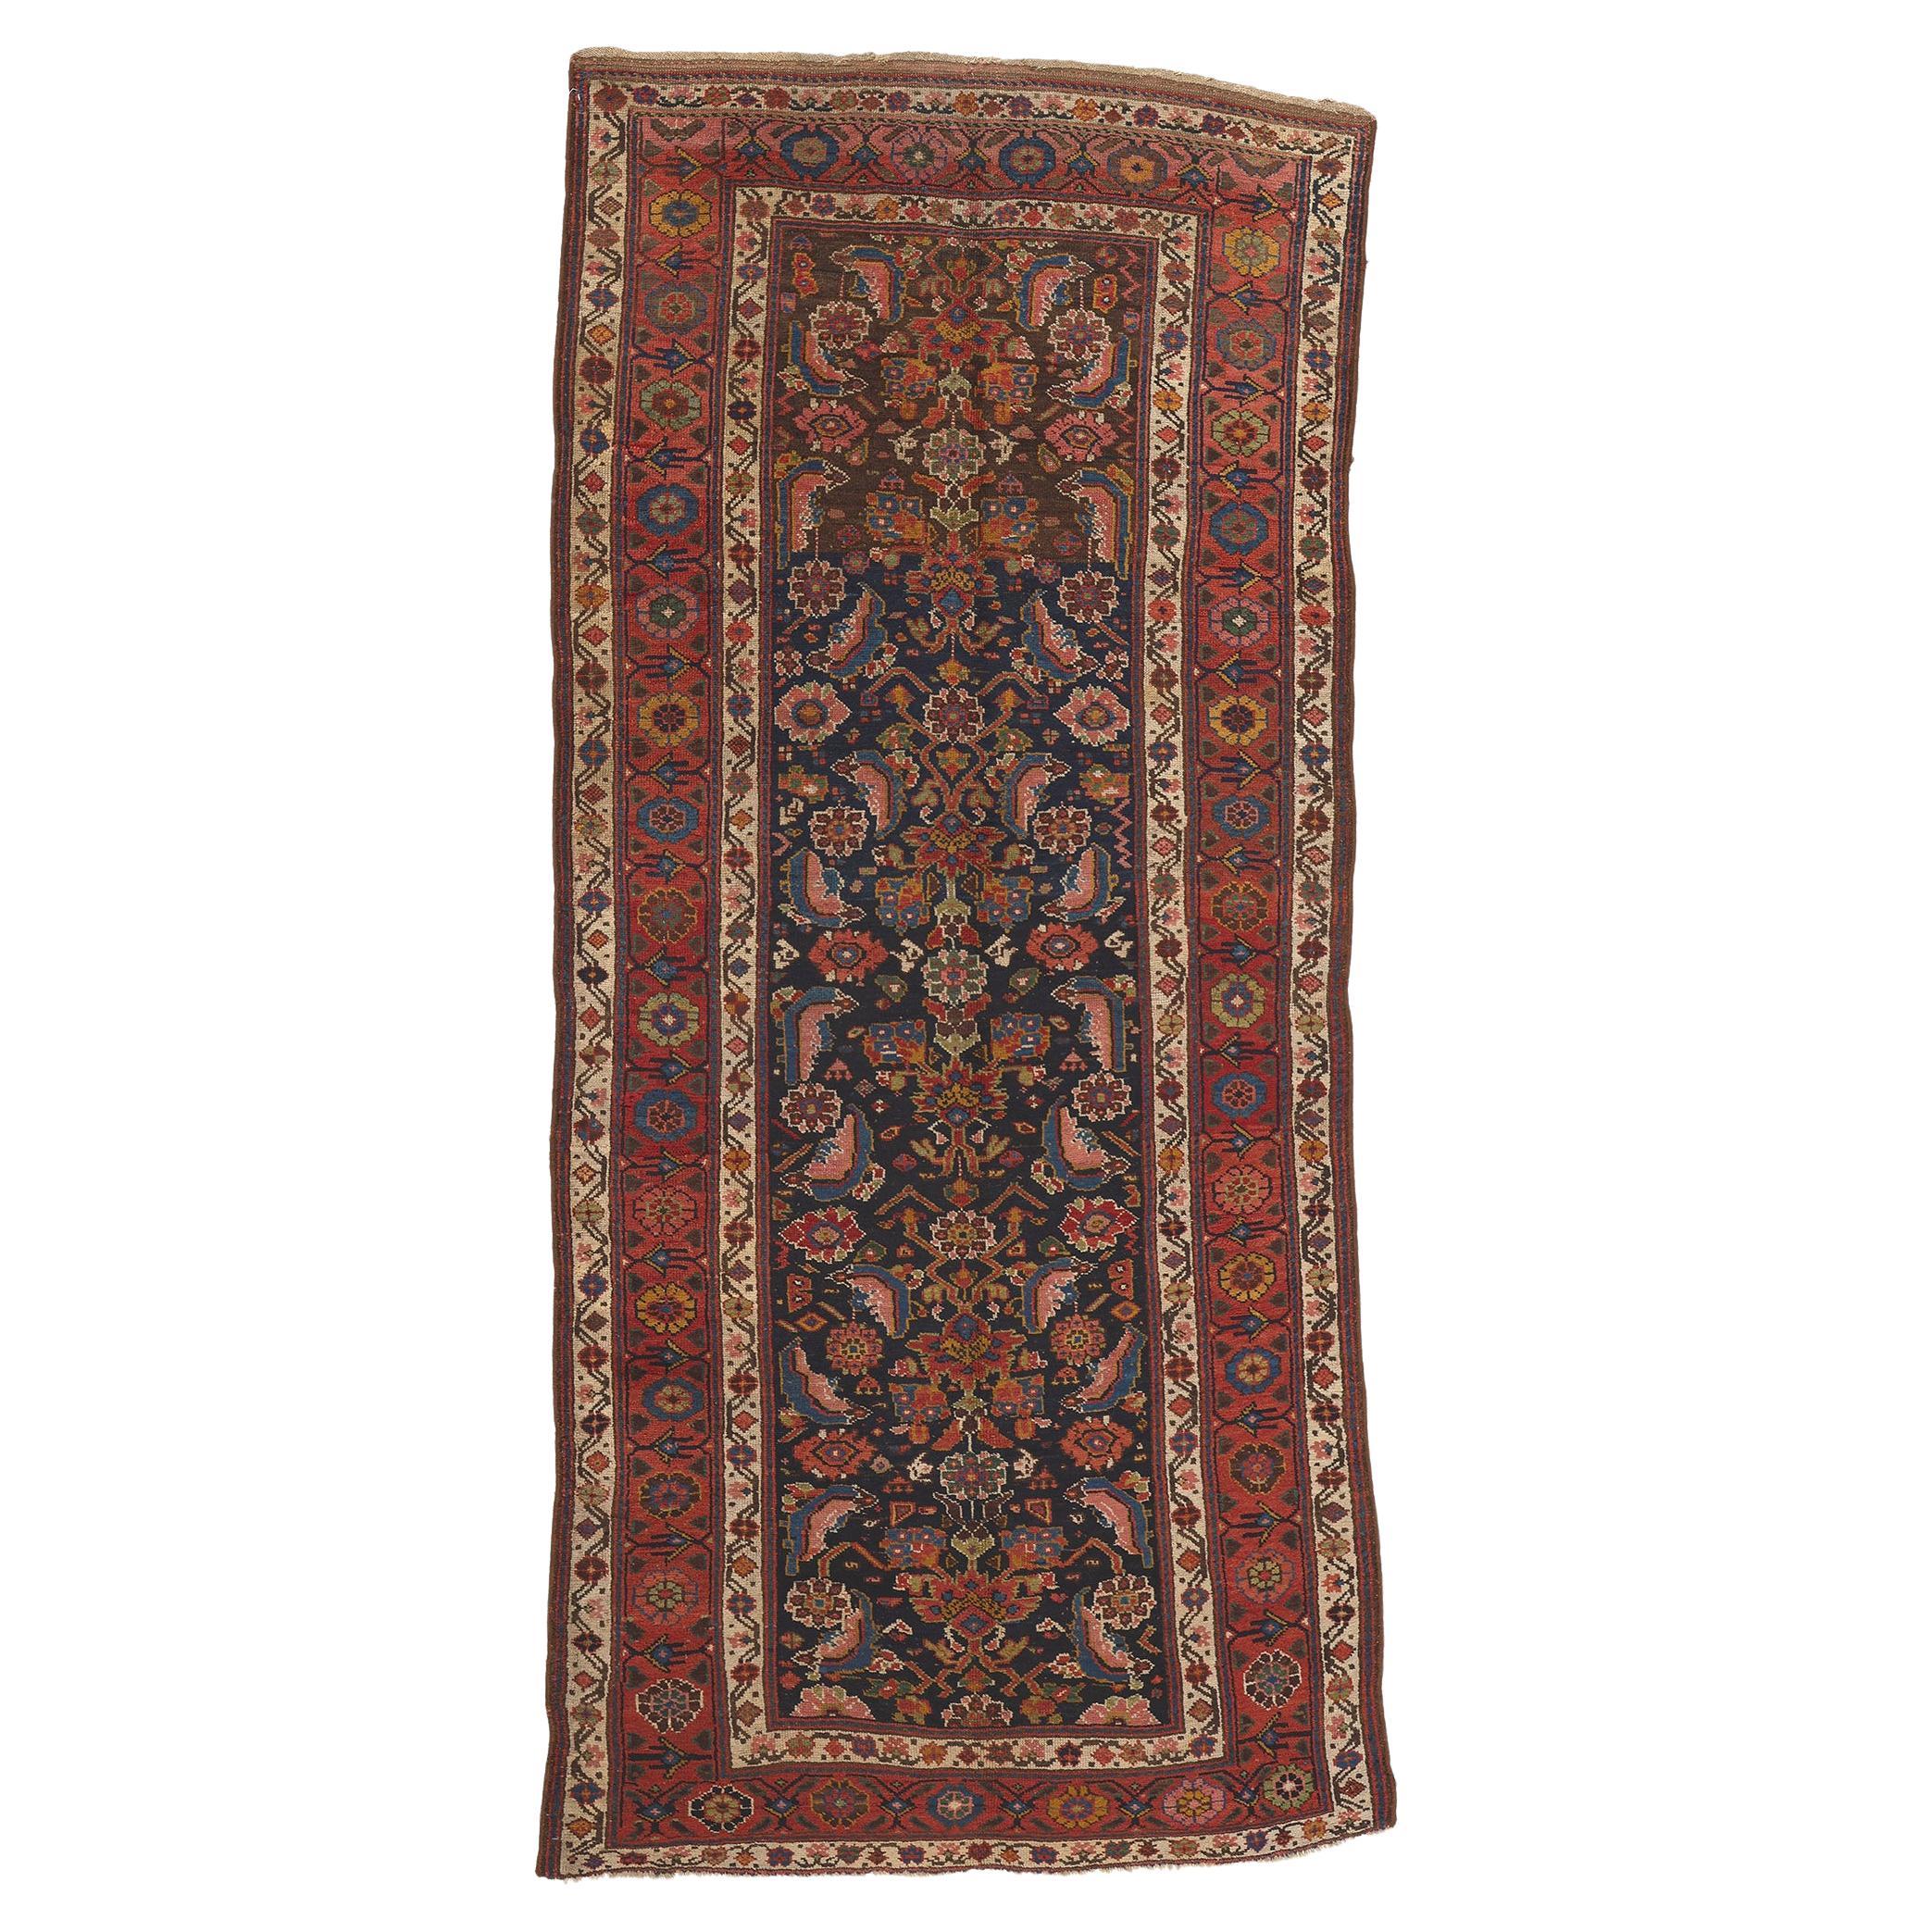 Antique Persian Kurdish Rug, Artisanal Excellence Meets Subtle Sophistication For Sale